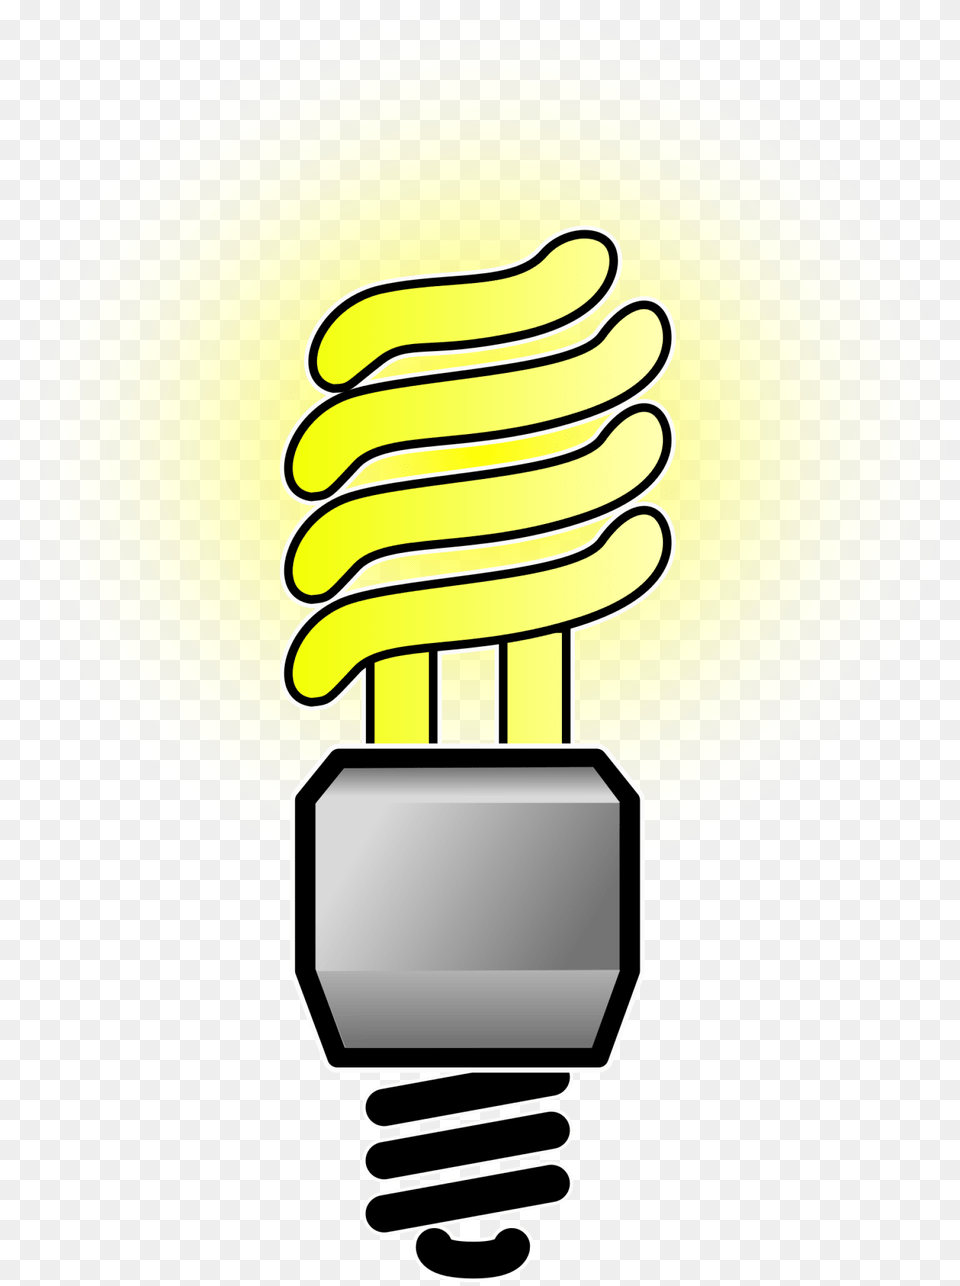 Led Light Bulb Clip Art Full Size Seekpng Energy Efficient Light Bulbs Clipart, Lightbulb Free Png